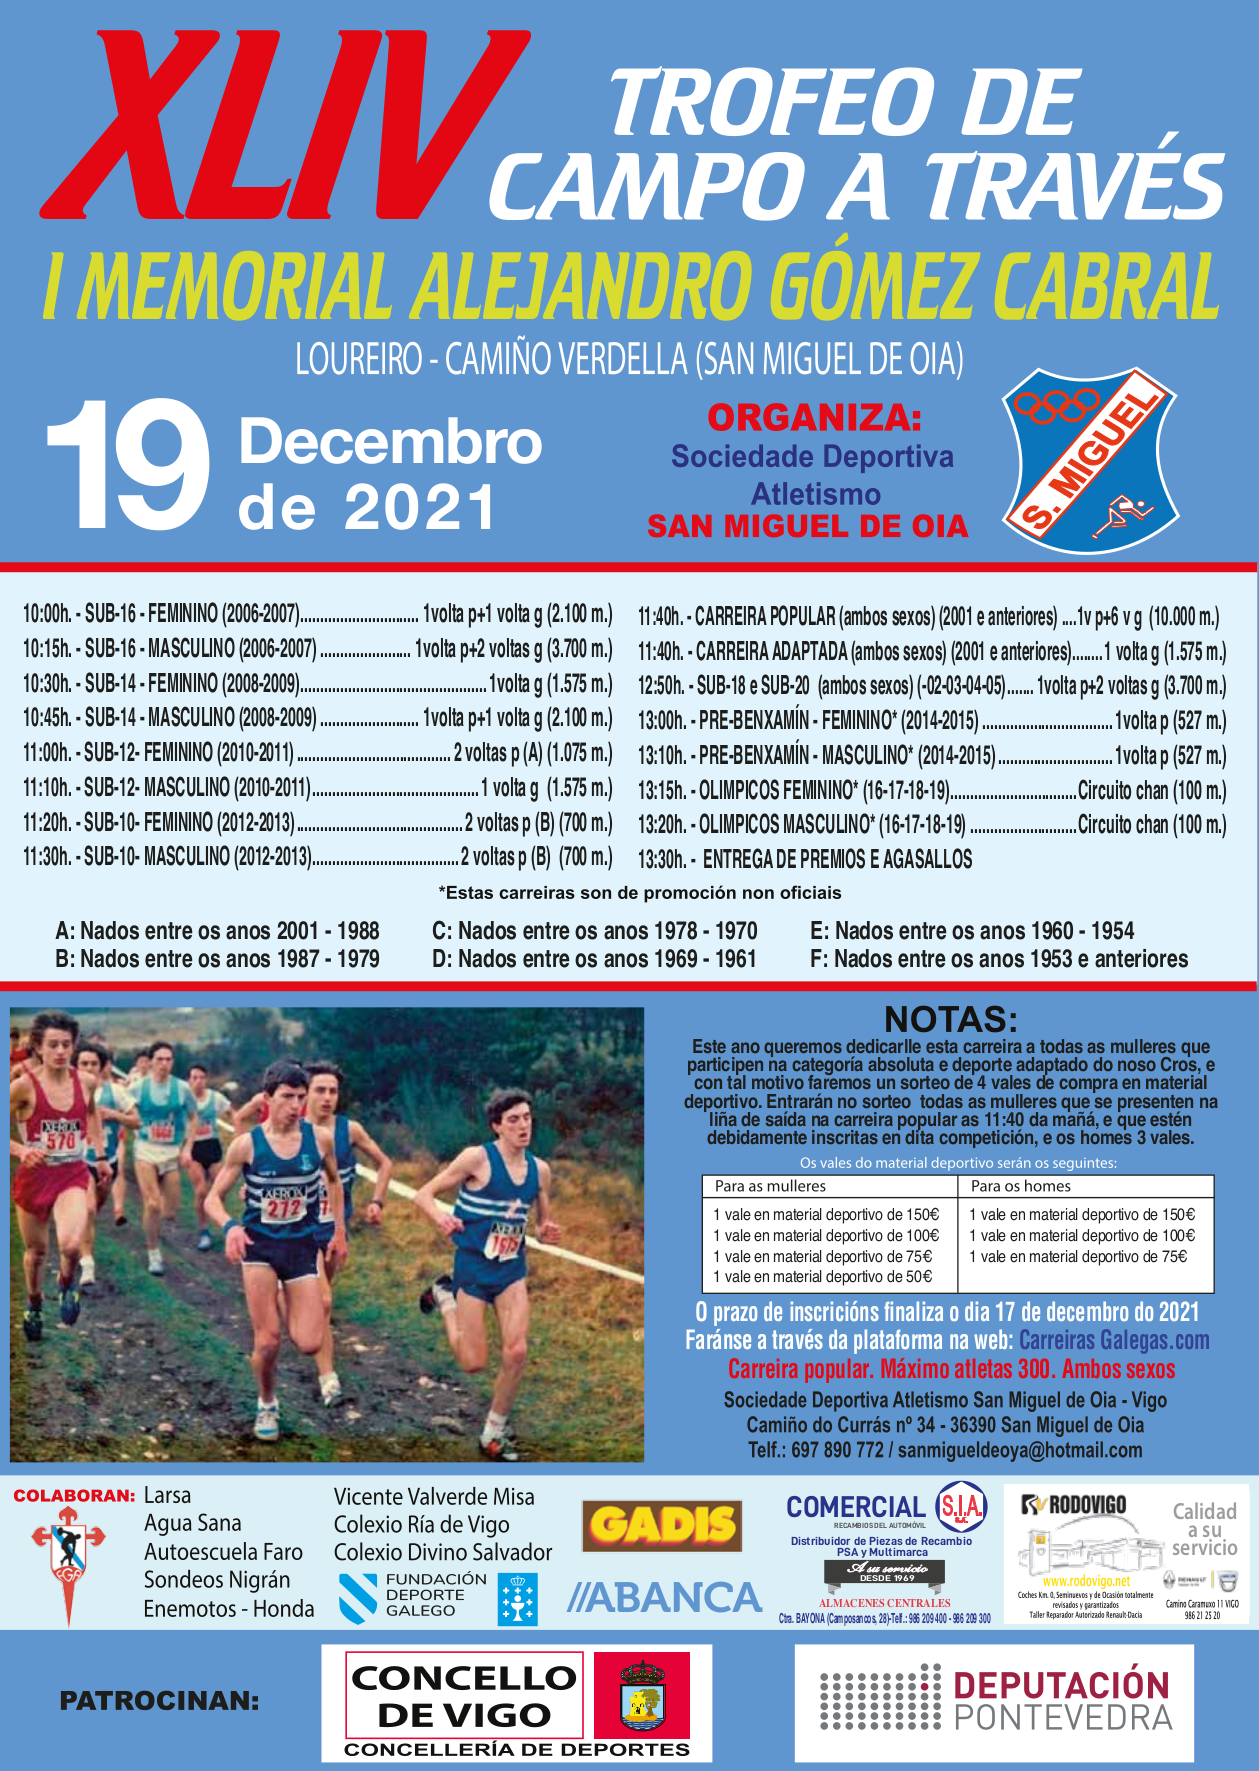 XLIV Trofeo de Campo a Través – San Miguel de Oia “I Memorial Alejandro Gómez Cabral”